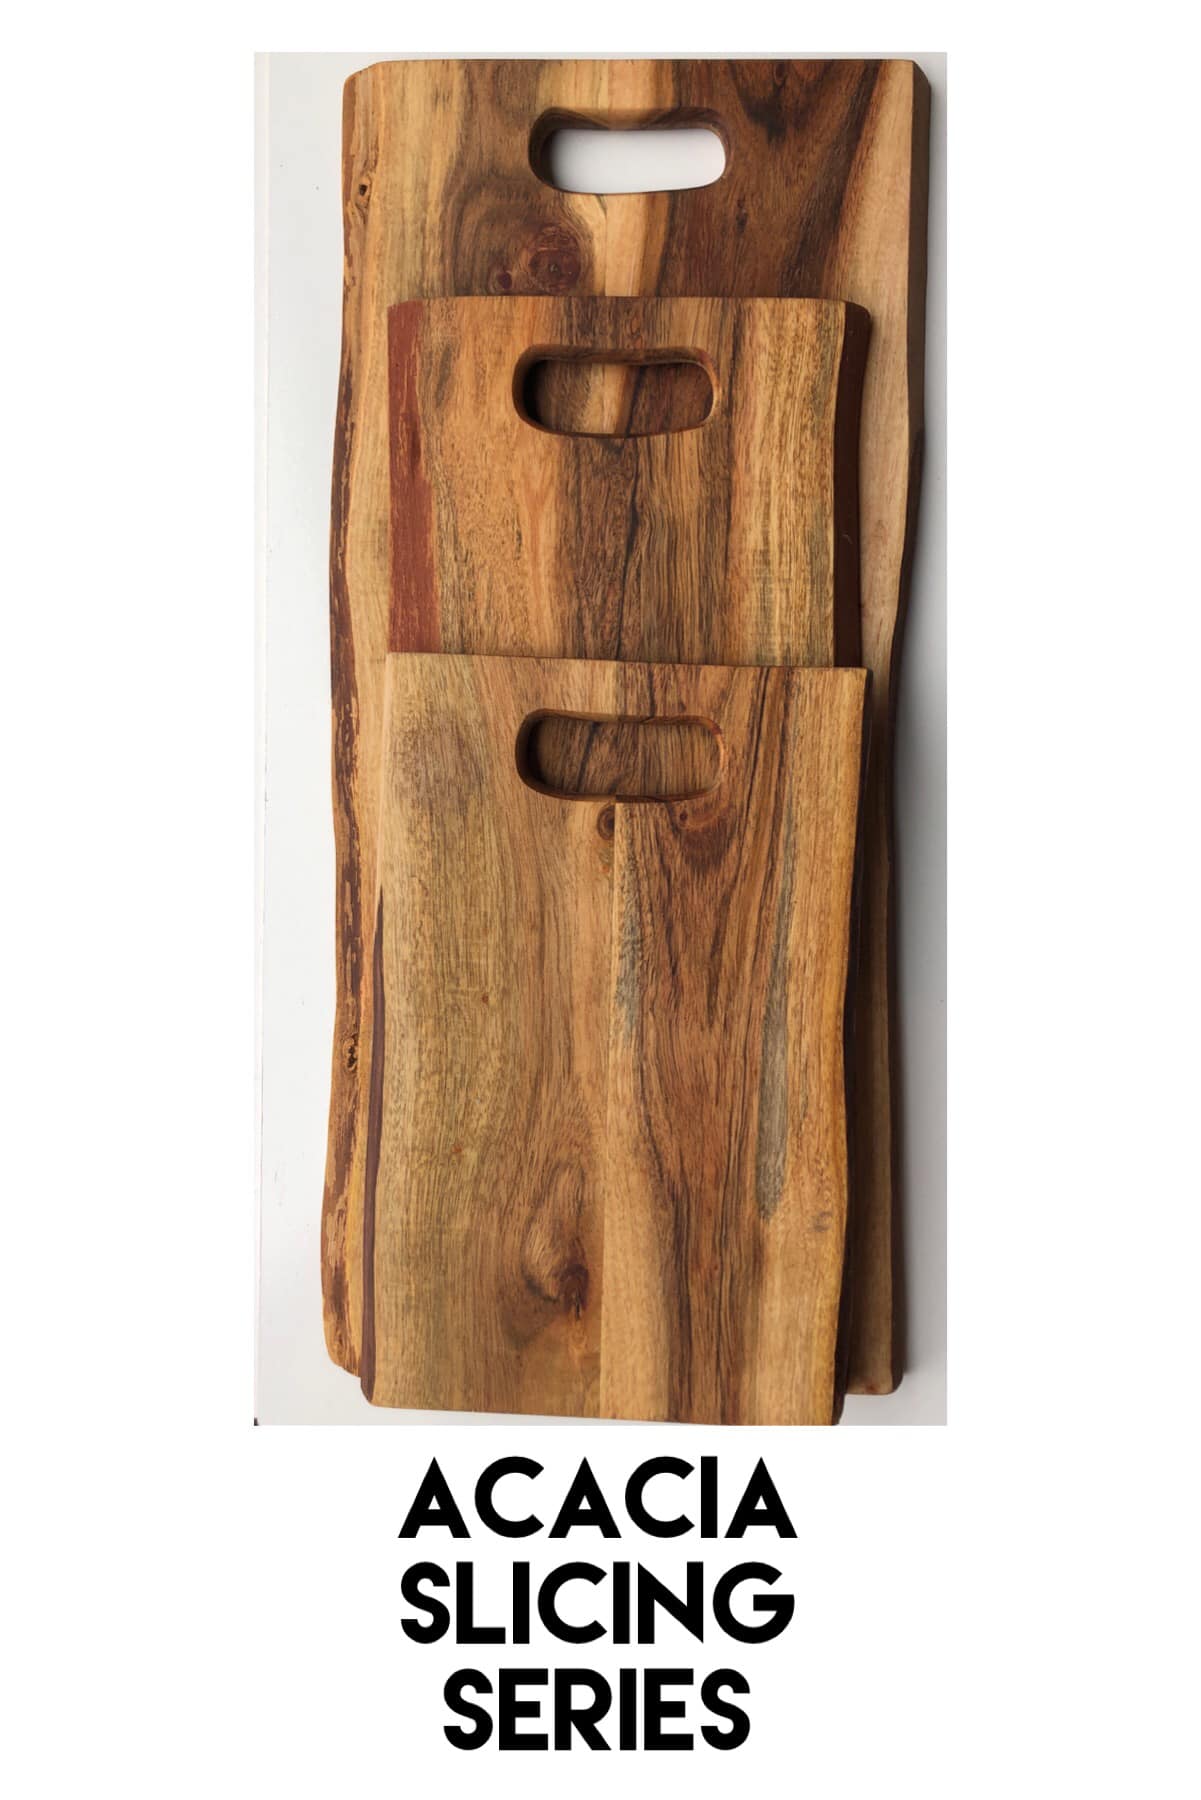 Single Large Slicing Live Edge Acacia Board - Pennsylvania